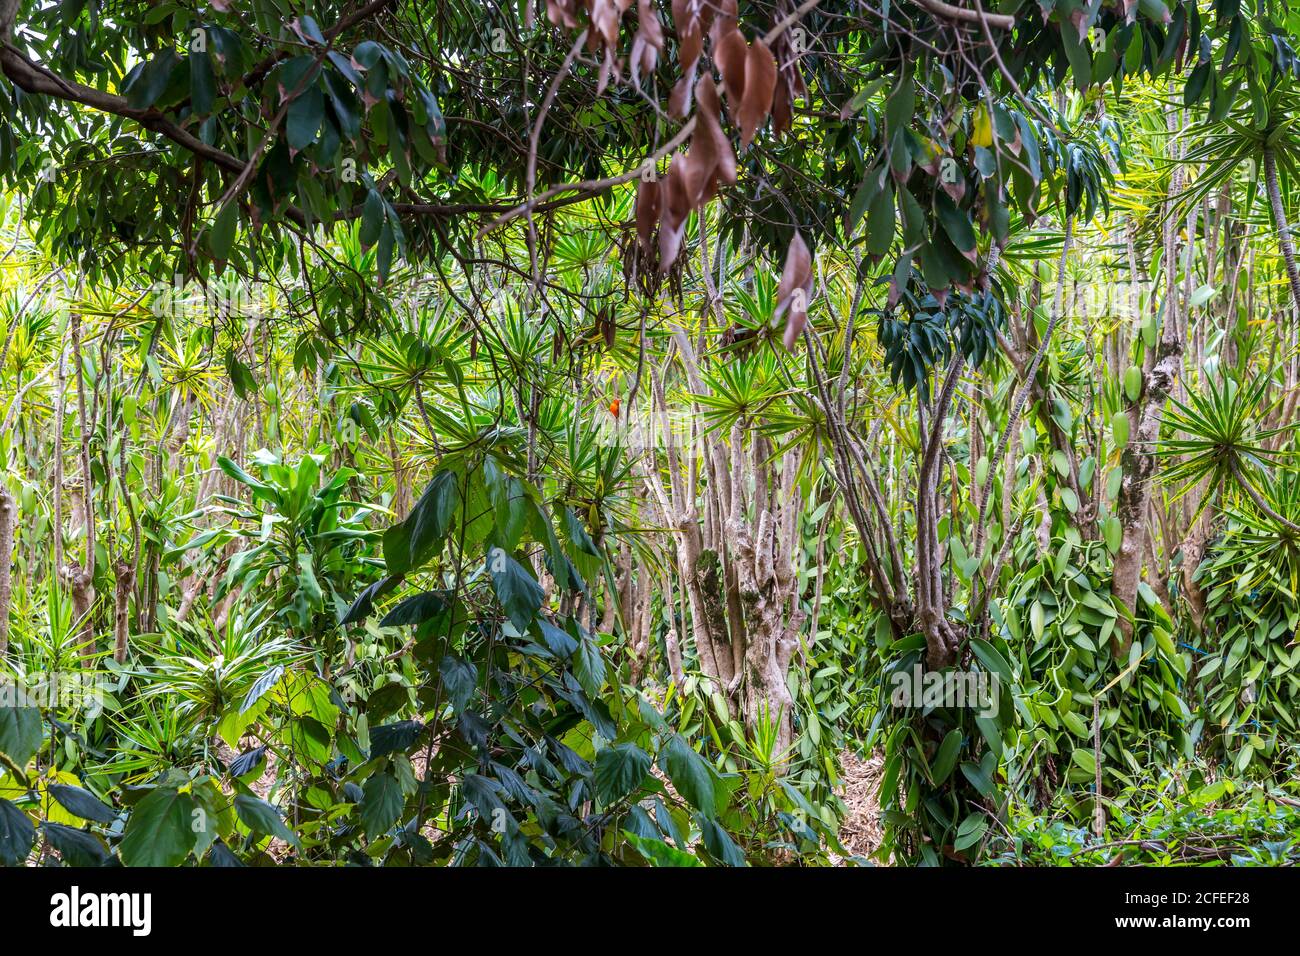 Kleiner roter Webervogel, (Foudia), tropische Vegetation mit Palmen und Vanillepflanzen, Saint-André, Réunion Island, Frankreich, Afrika, Indischer Ozean Stockfoto